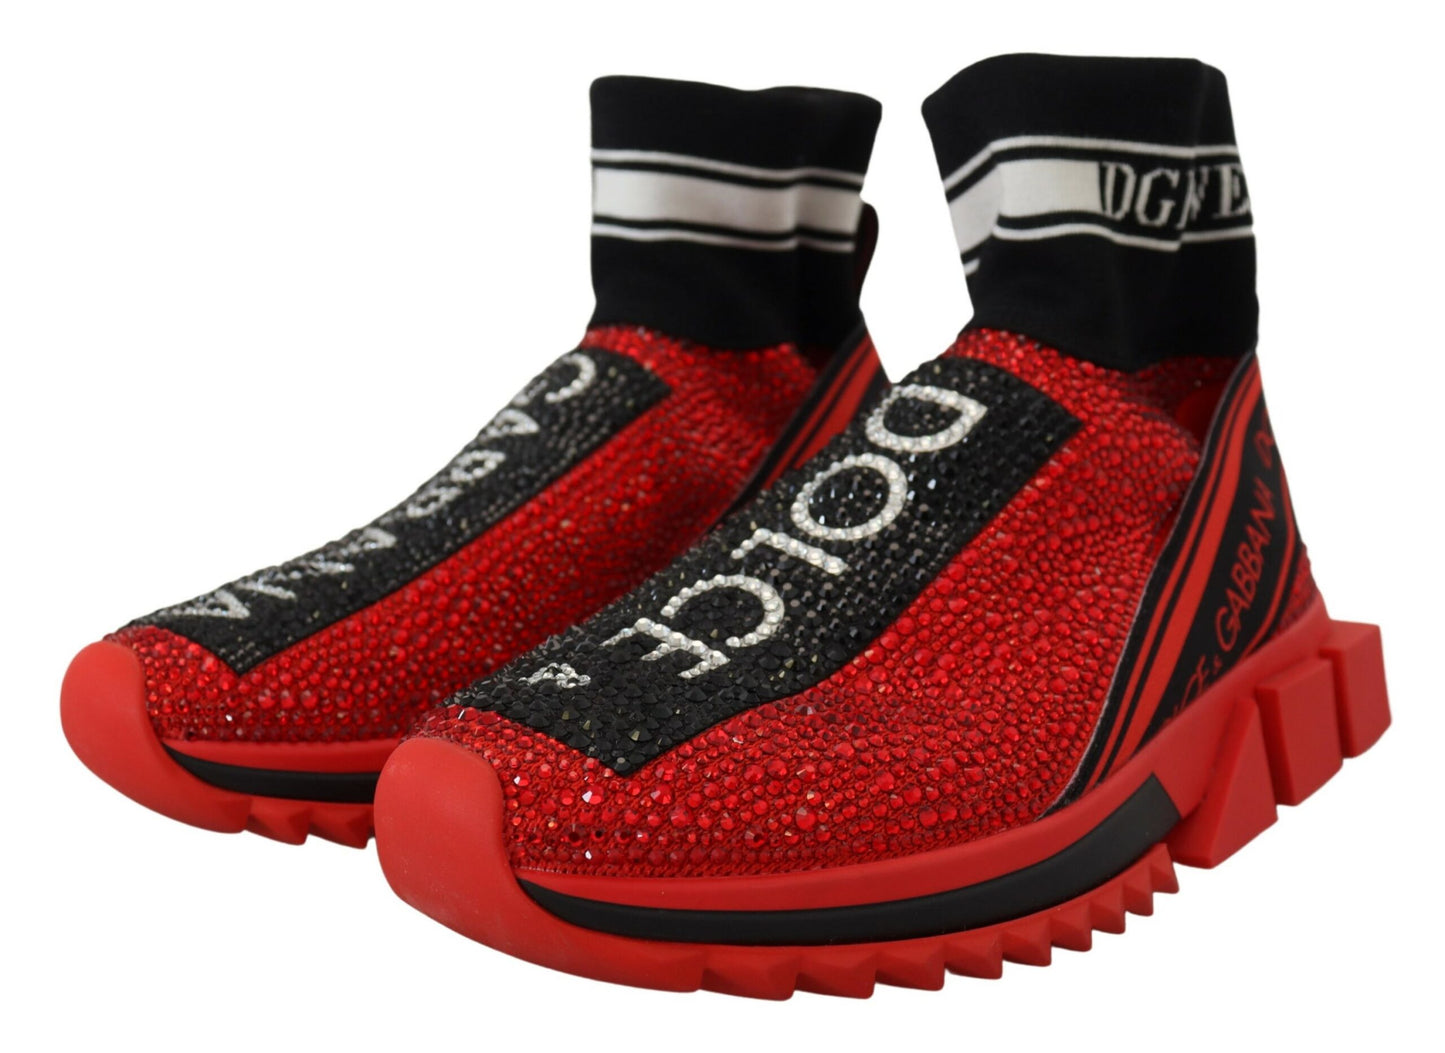 Dolce & Gabbana Red Bling Sorrento Sneakers Socken Schuhe